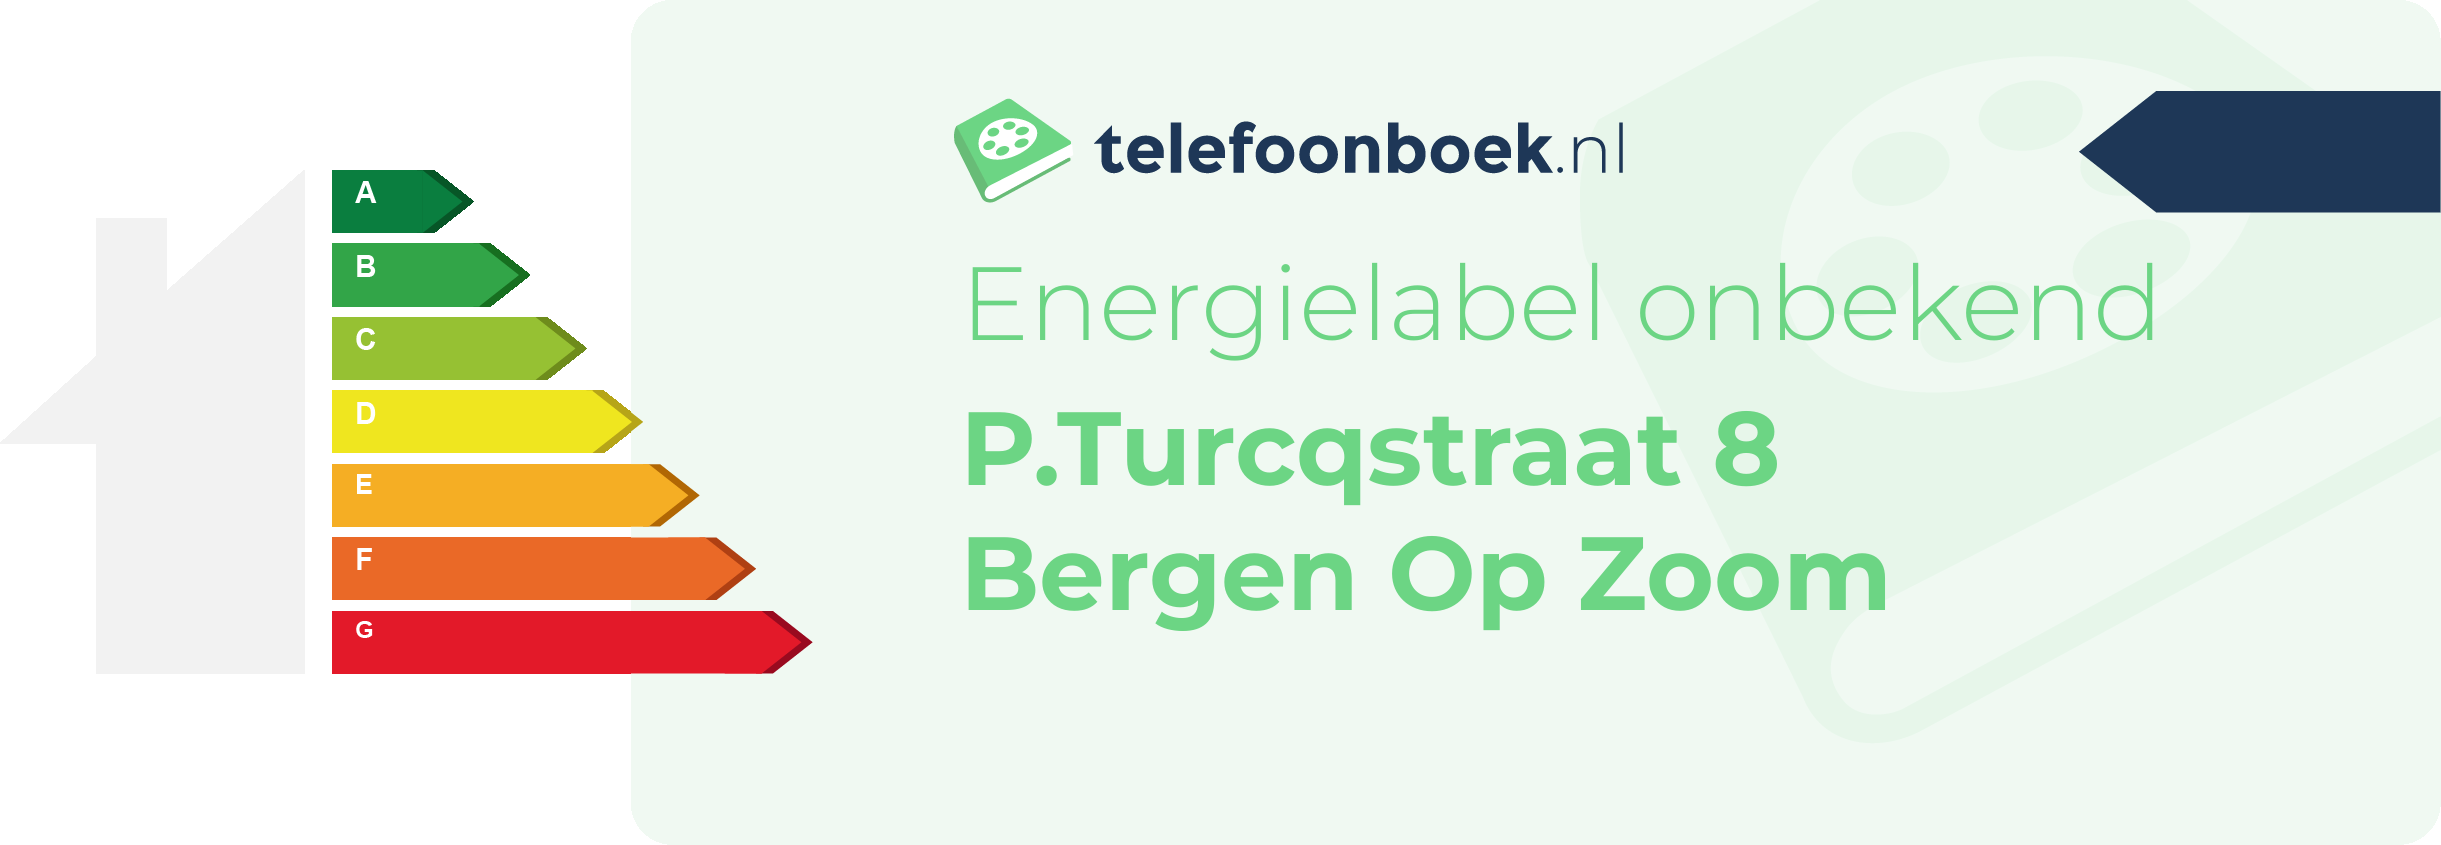 Energielabel P.Turcqstraat 8 Bergen Op Zoom